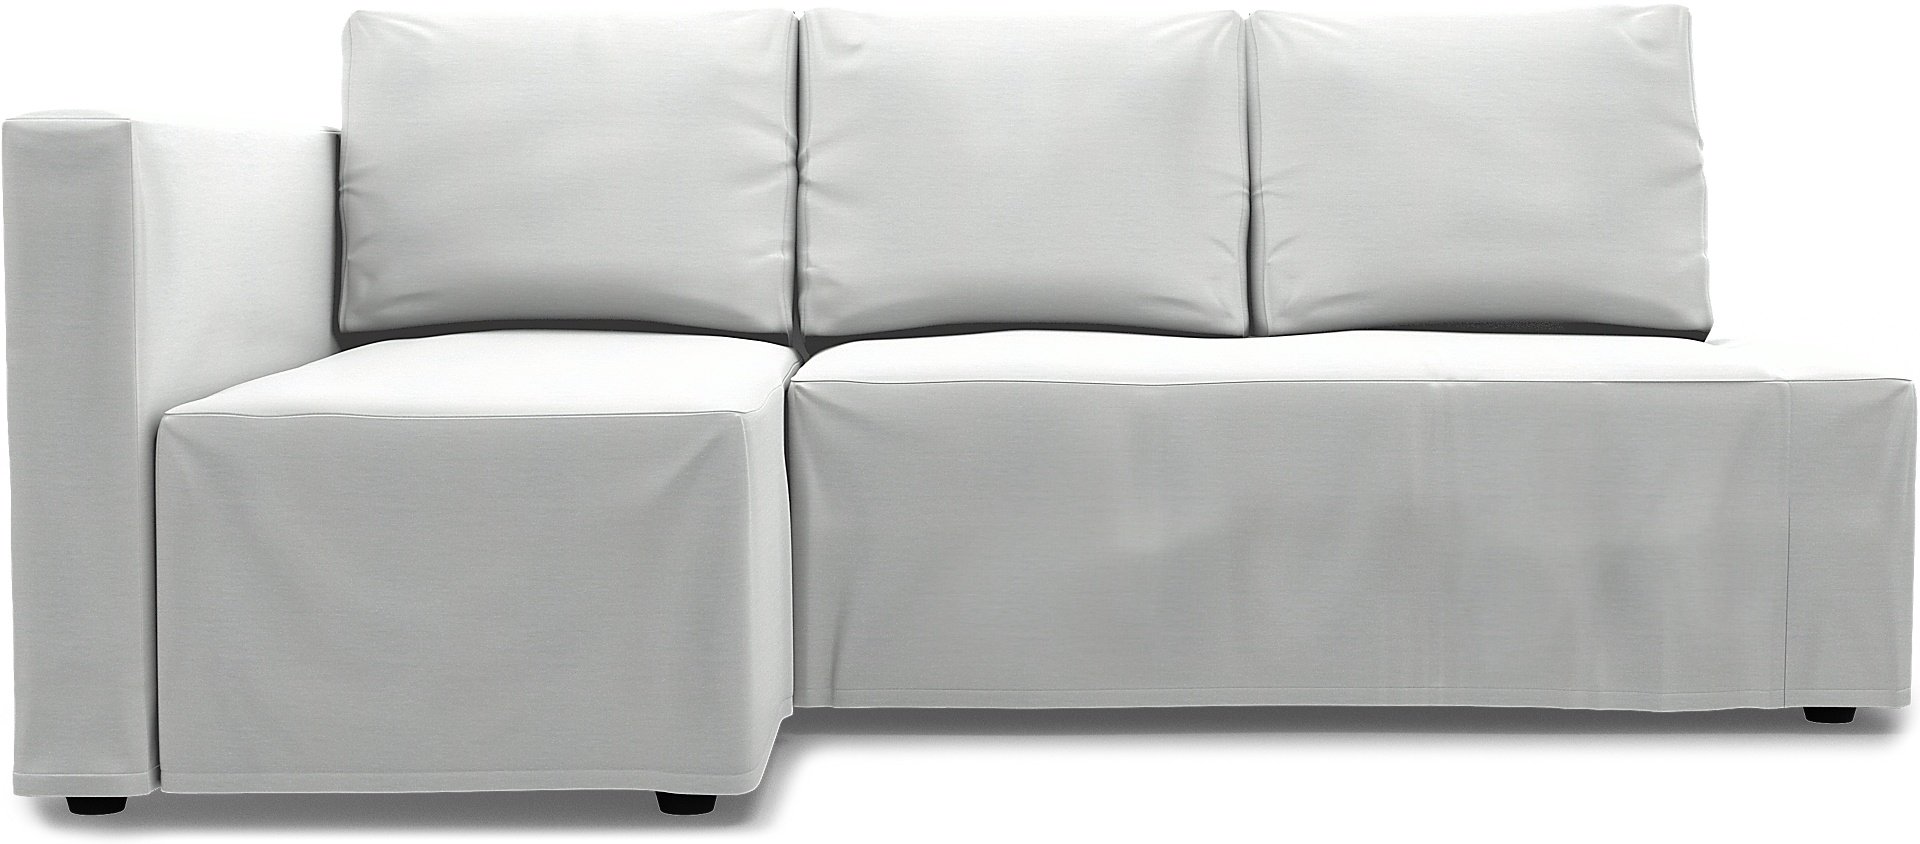 IKEA - Friheten Sofa Bed with Left Chaise Cover, White, Linen - Bemz